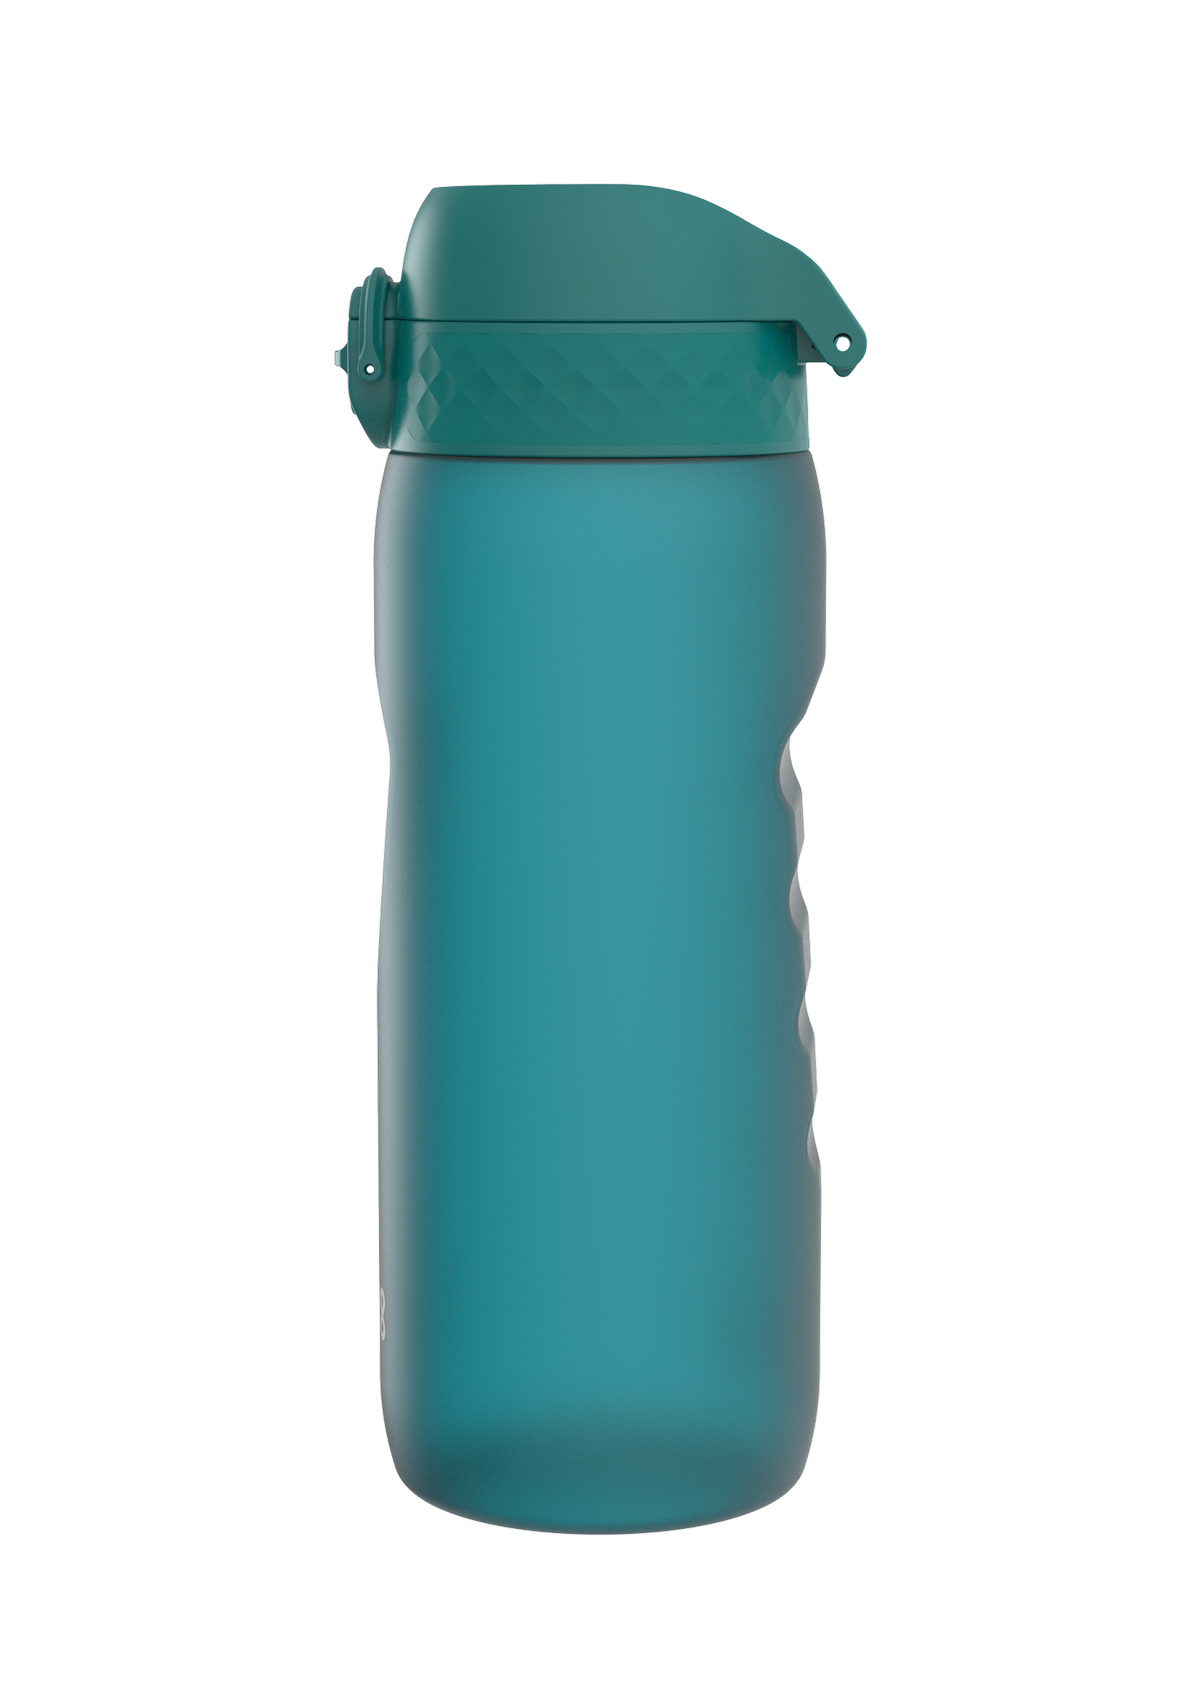 ION8 Water Bottle Leak Proof 750ml BPA Free